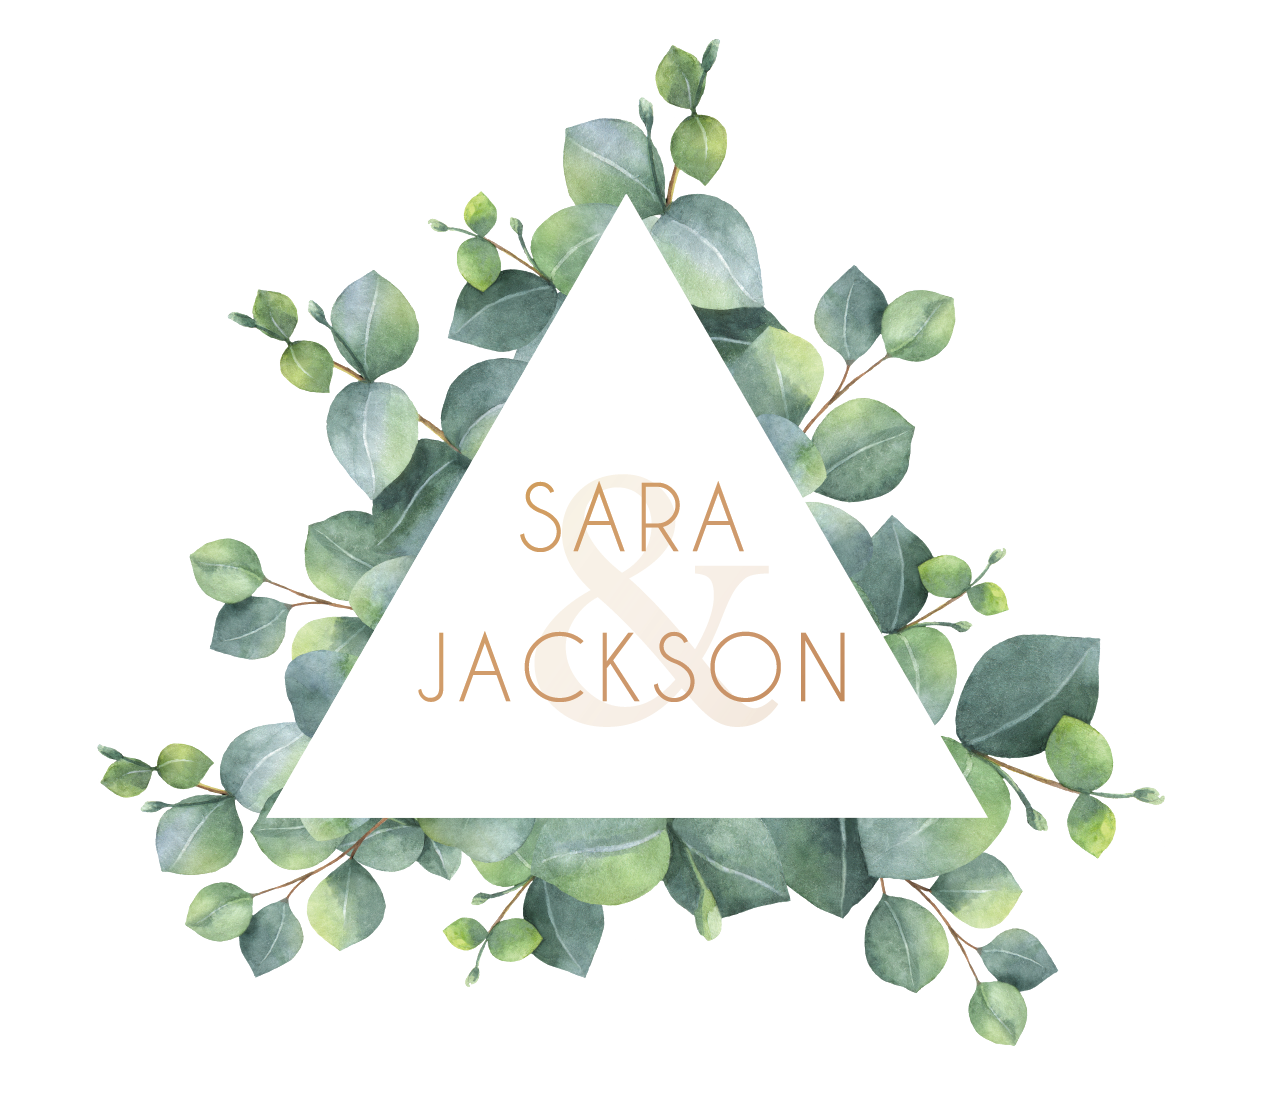  Jackson and Sara